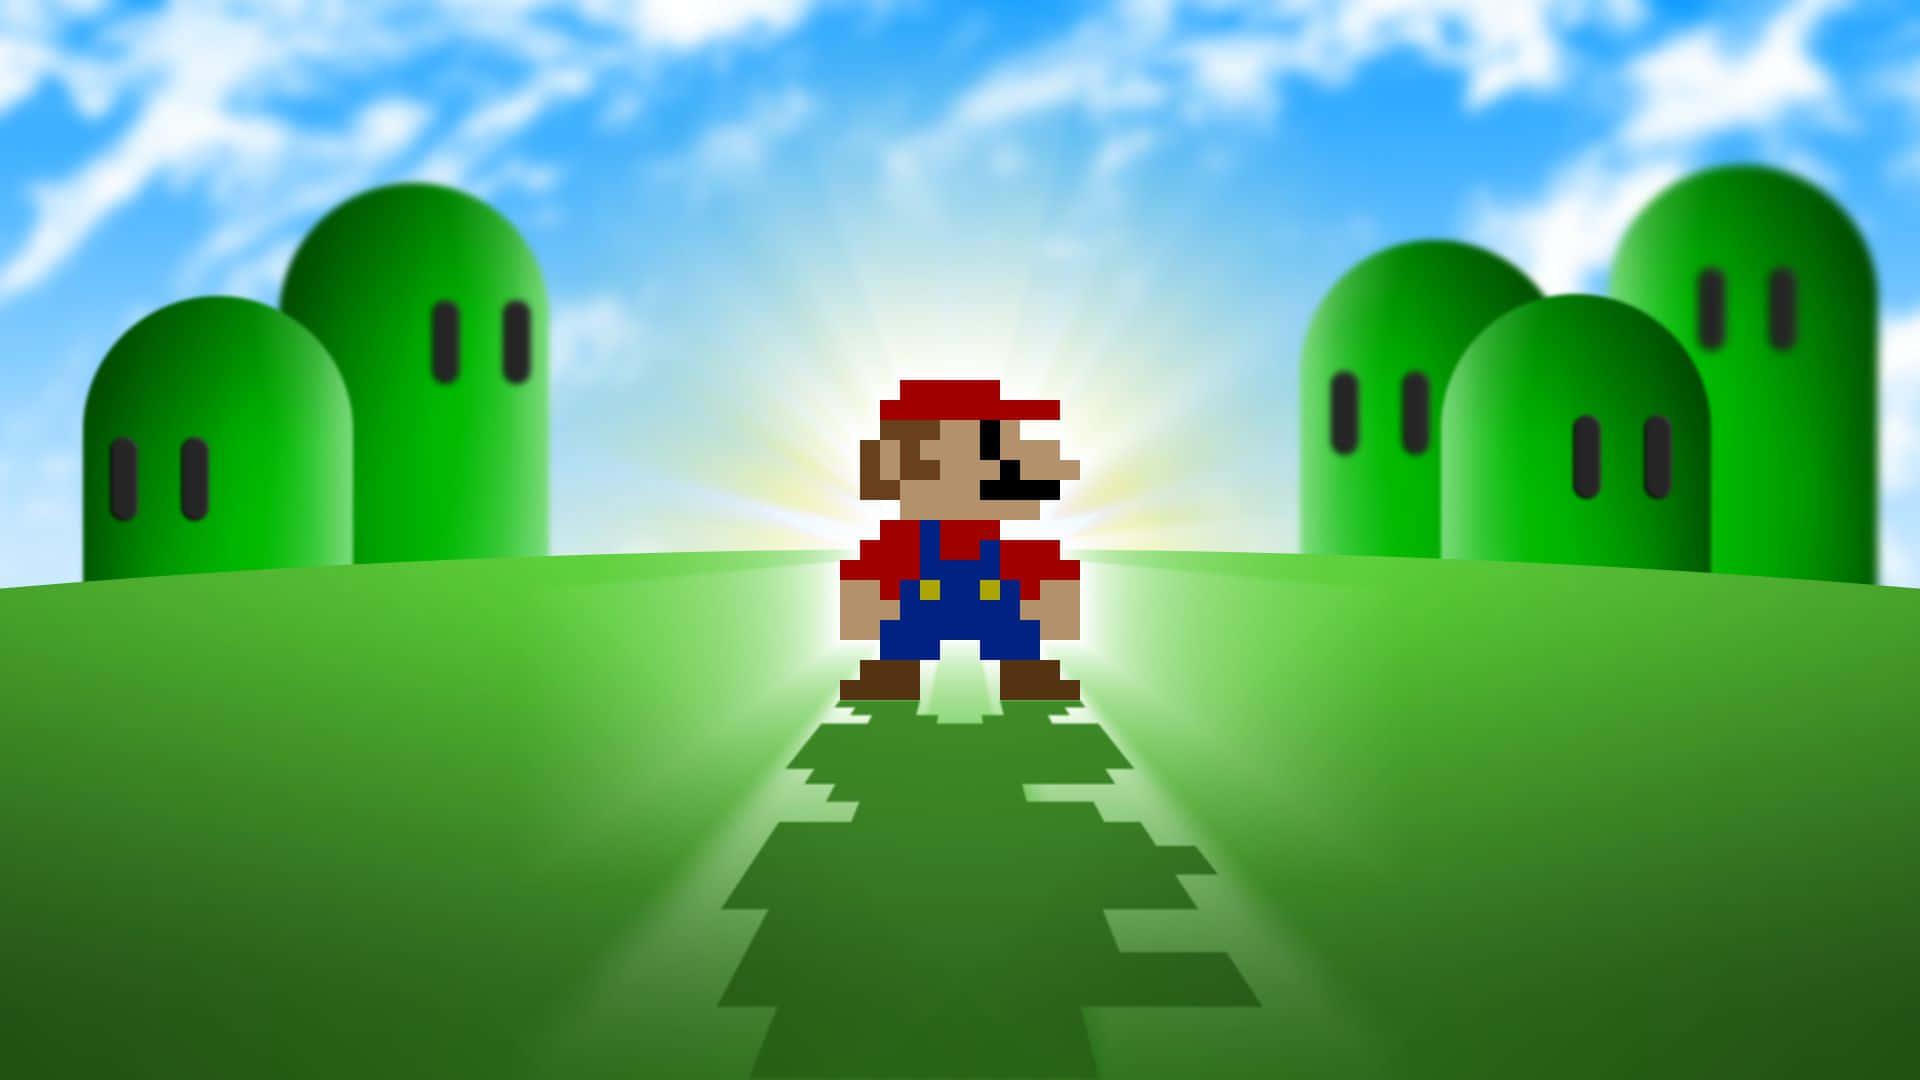 Mario baggrundsbilleder skygger gennem en solskinsdag.